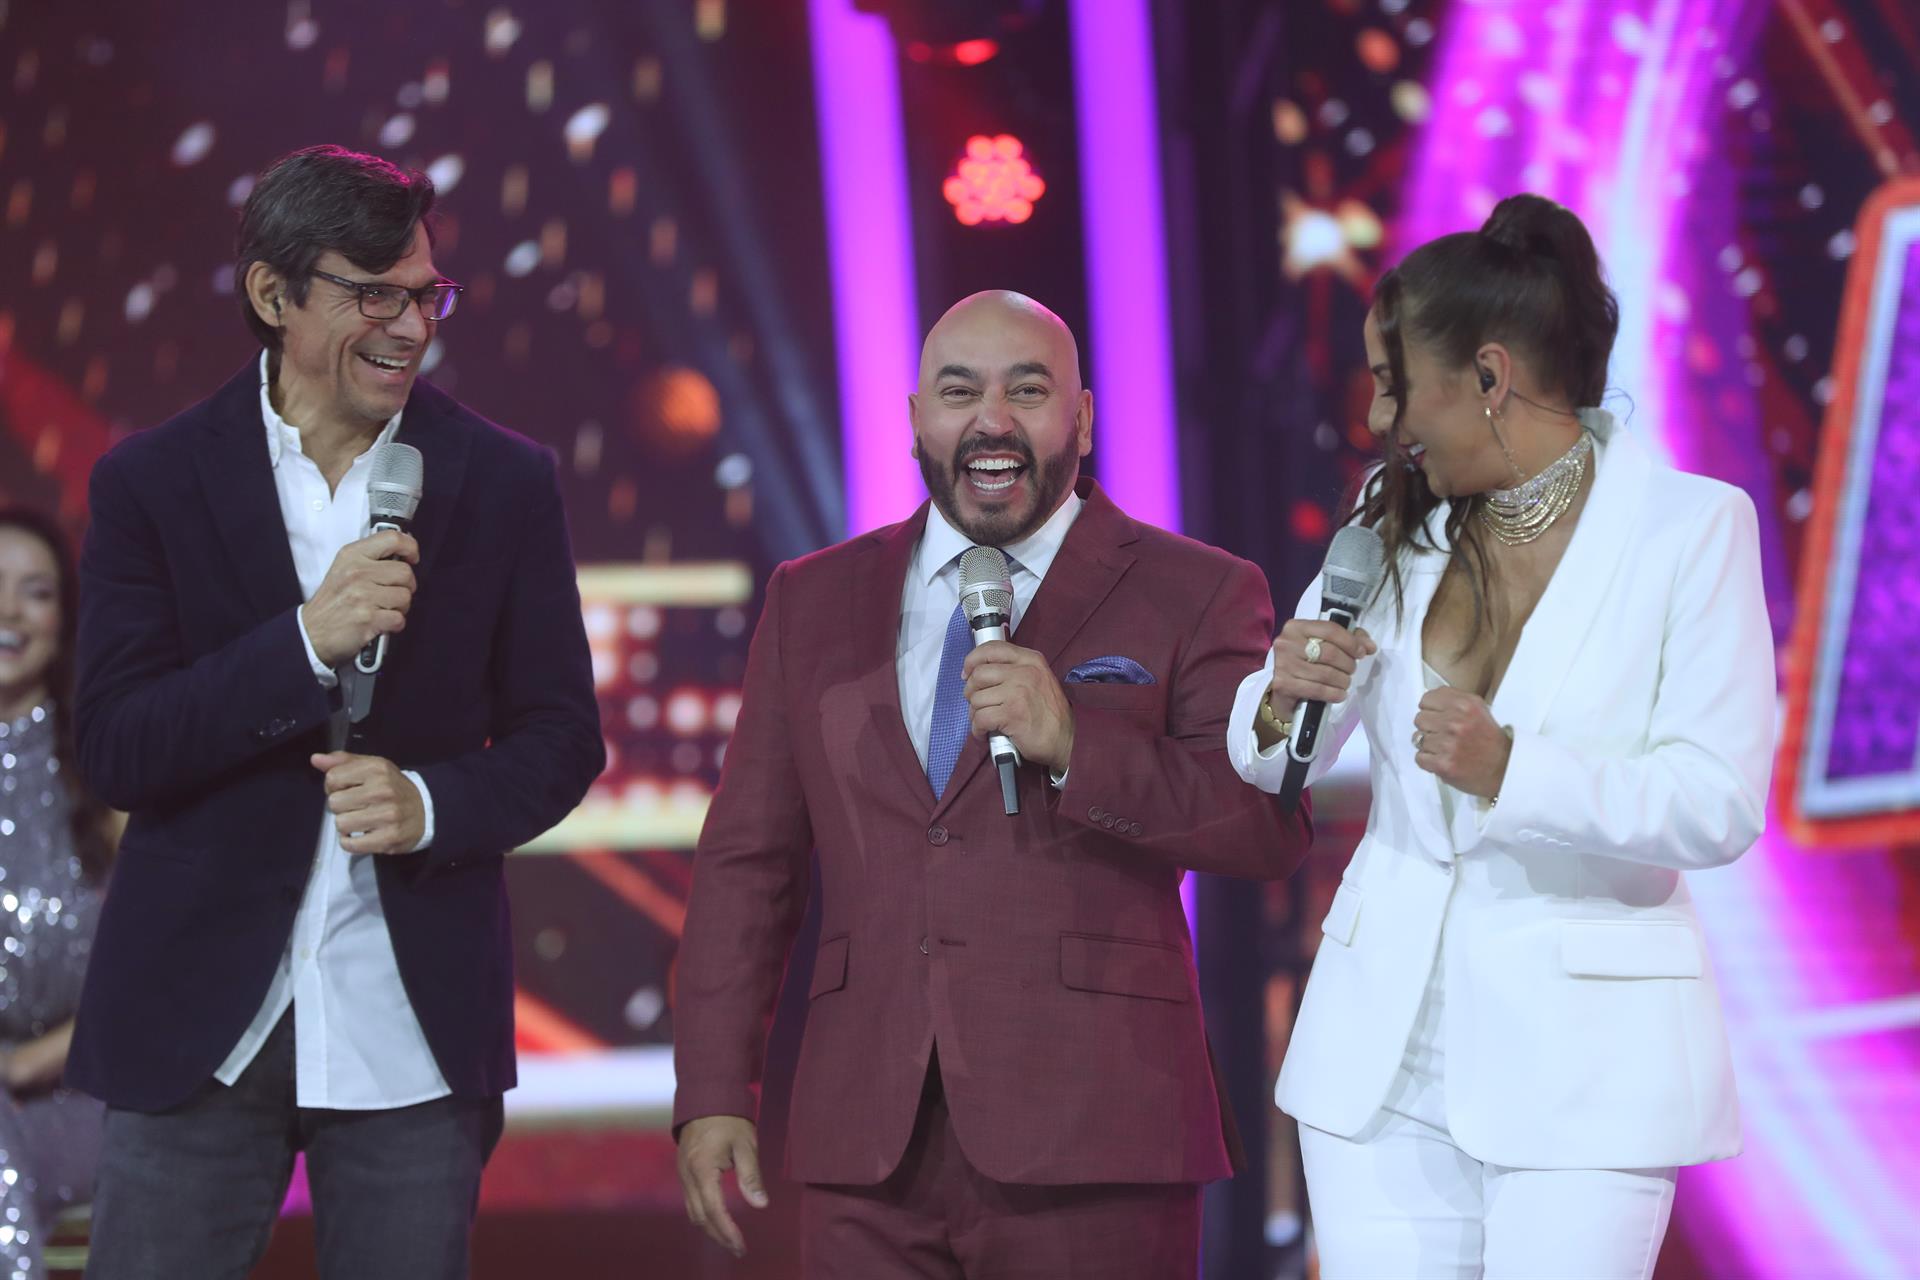 El productor de televisión Rubén Galindo (i), el cantante Lupillo Rivera (c) y la conductora Consuelo Duval (d) participan en la presentación de programa 